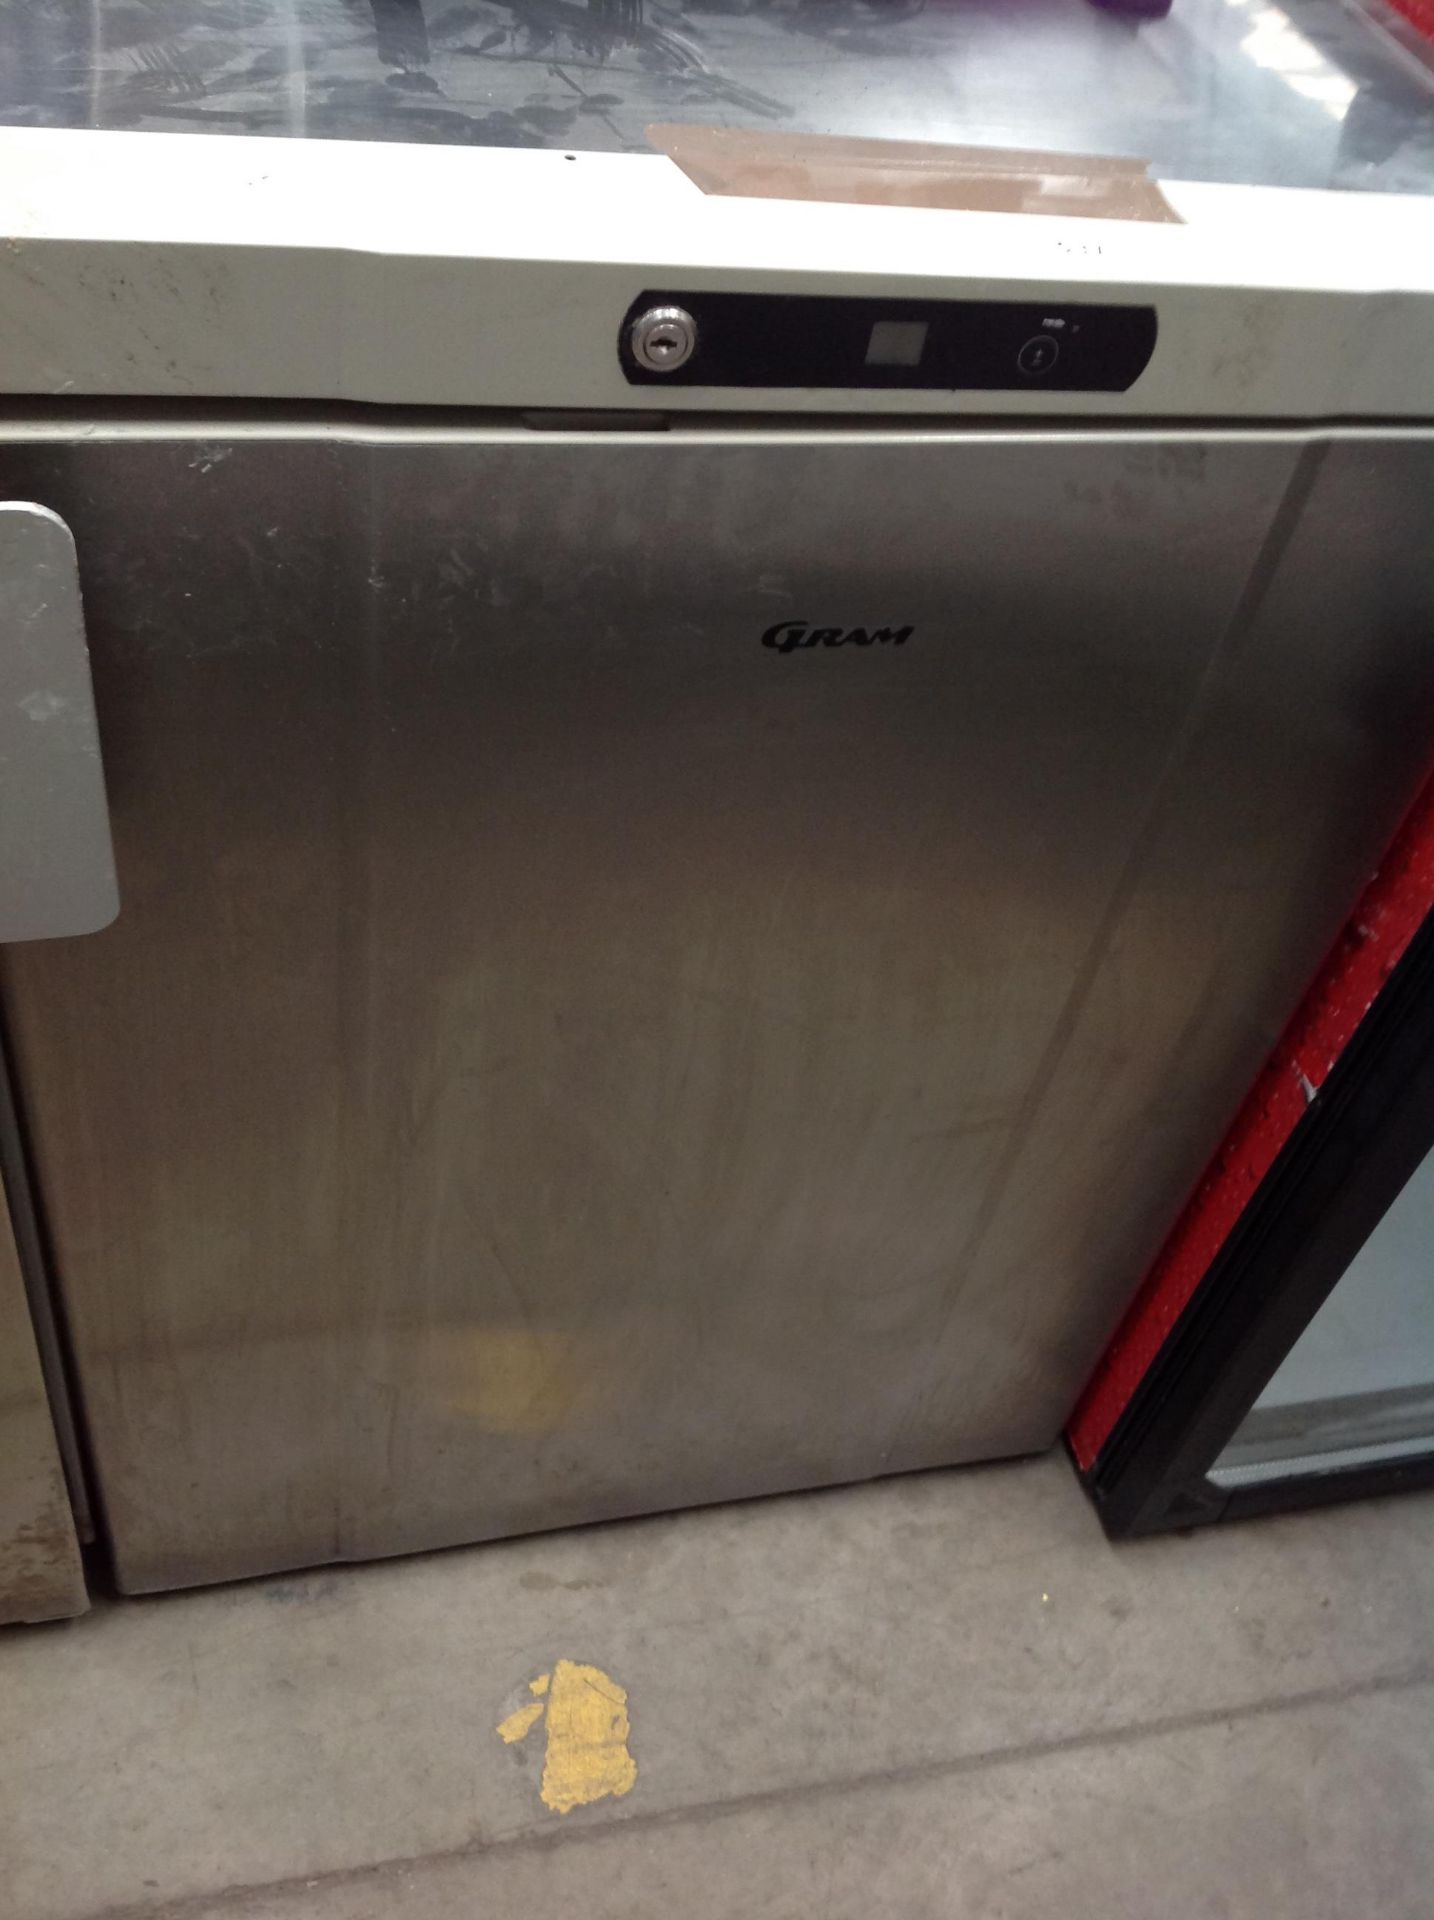 Gram stainless steel under counter freezer (F300R)